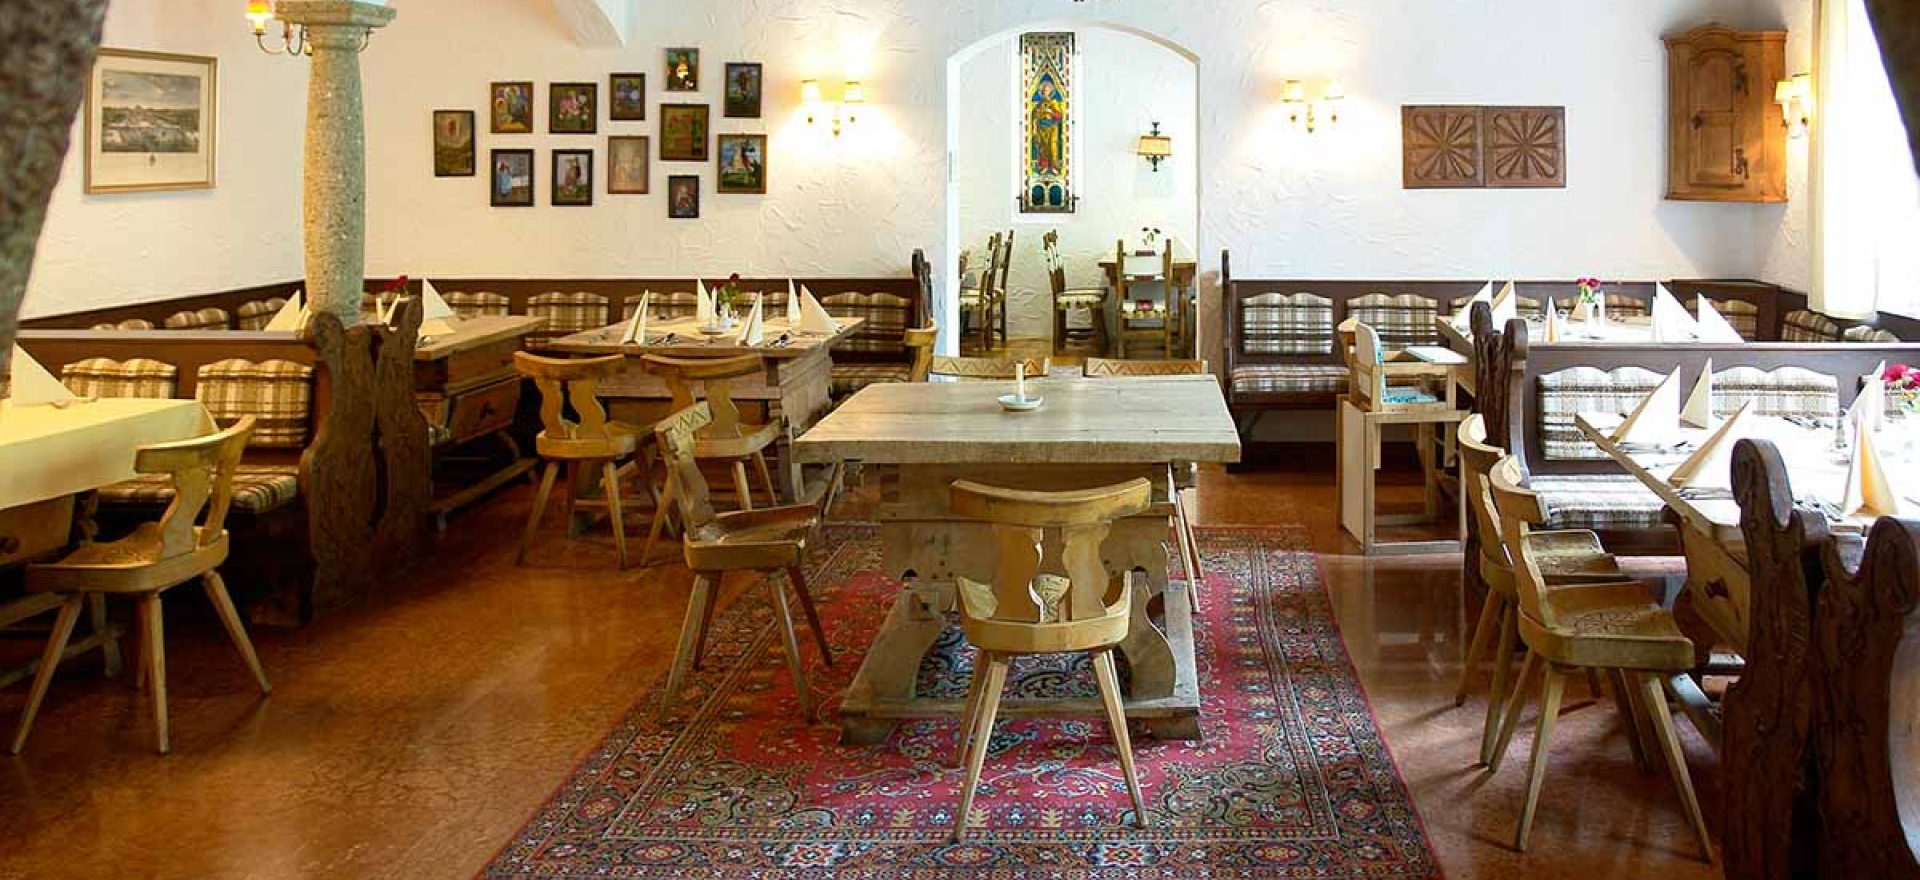 Der Bayrische Raum im Restaurant von Stol's Hotel Alpina in Berchtesgaden / Schönau am Königssee